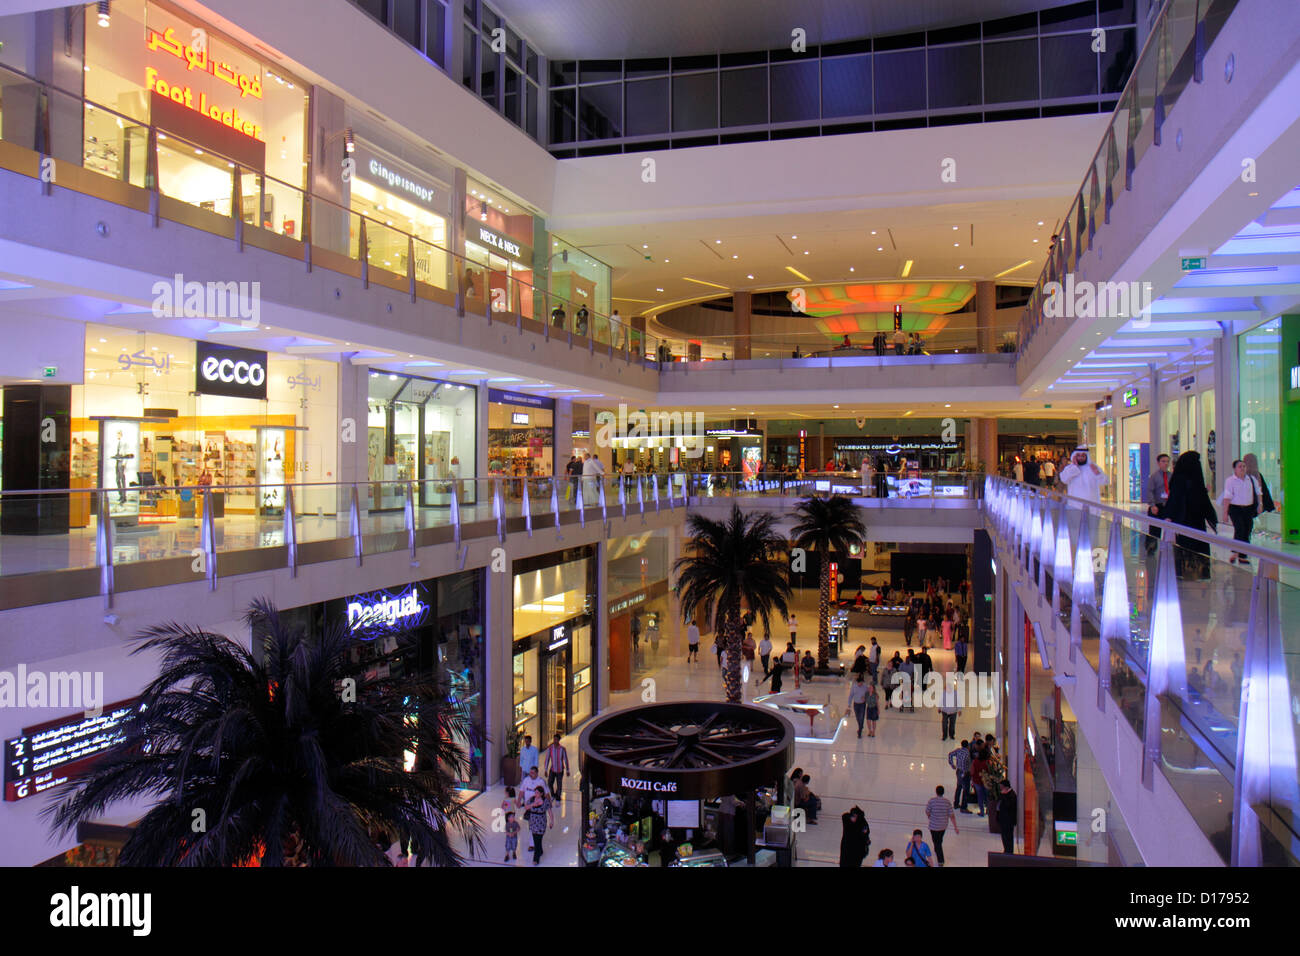 Dubai UAE,Emirati Arabi Uniti,Medio Oriente orientale,Centro citta' di Dubai,Burj Dubai,Dubai Mall,negozio,negozi,aziende,distretto,livelli,Foot Locker,Ecco,Engli Foto Stock